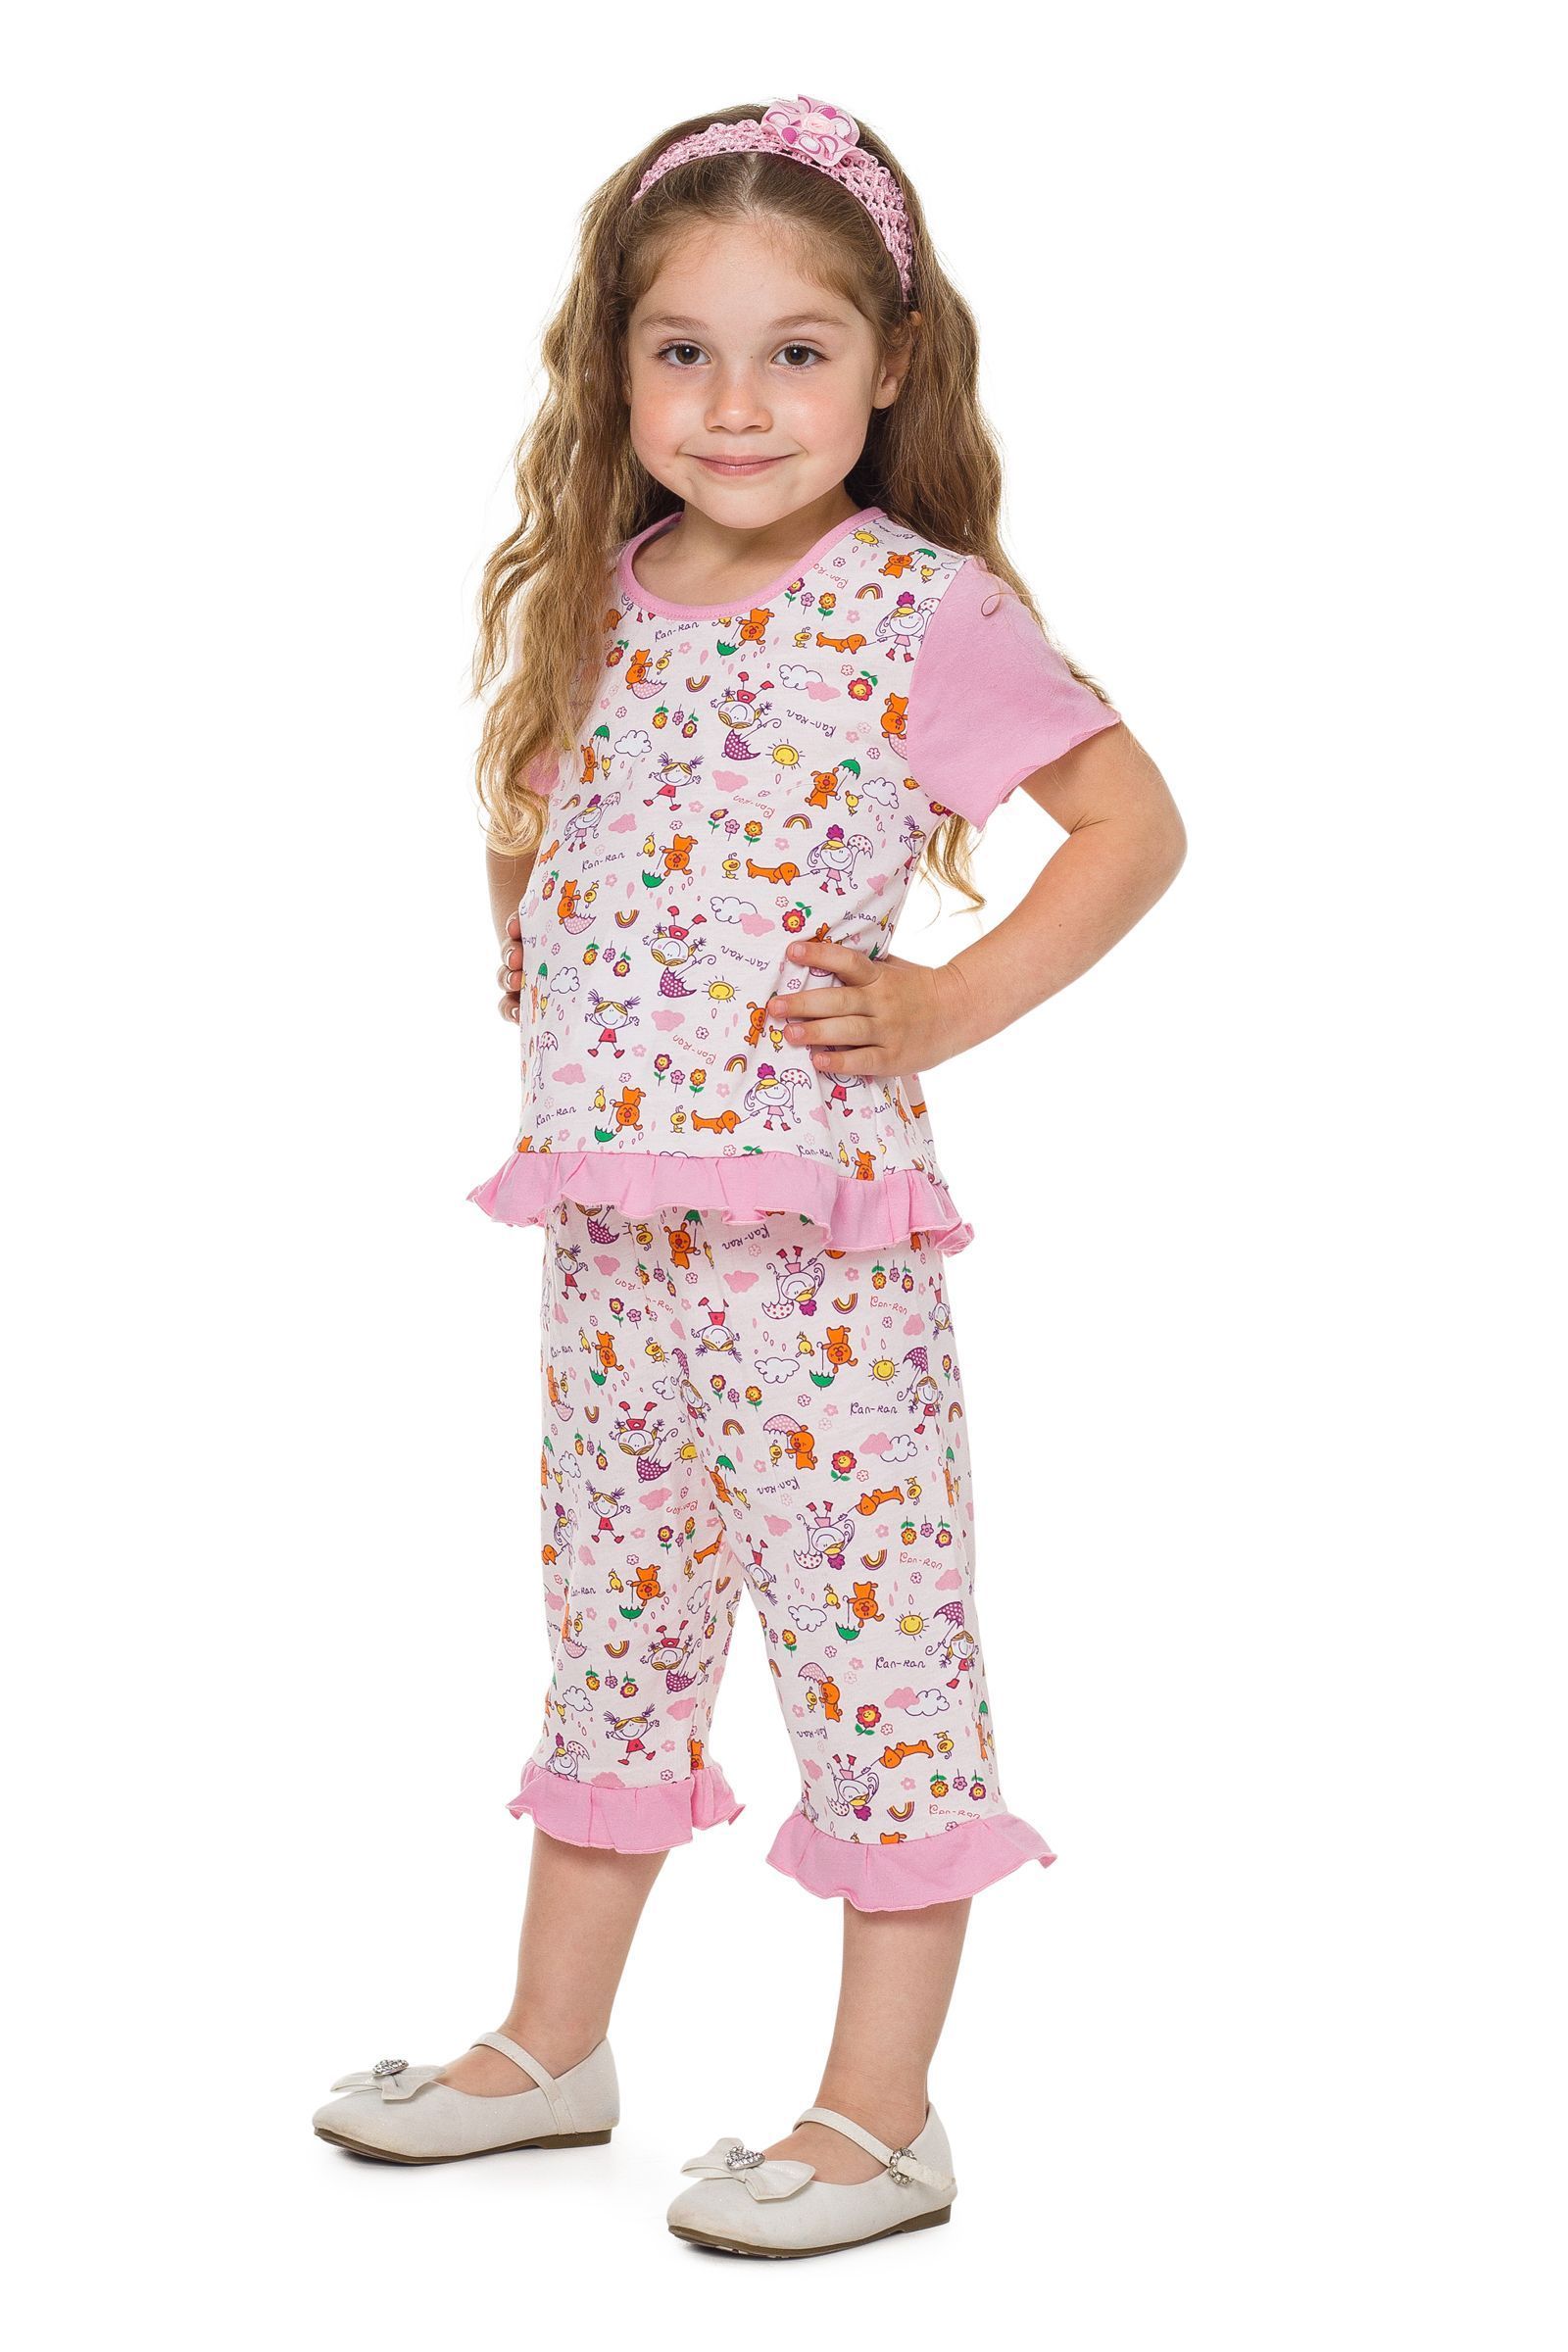 Пижама-ПЖ02-1019н оптом от производителя детской одежды 'Алёна'